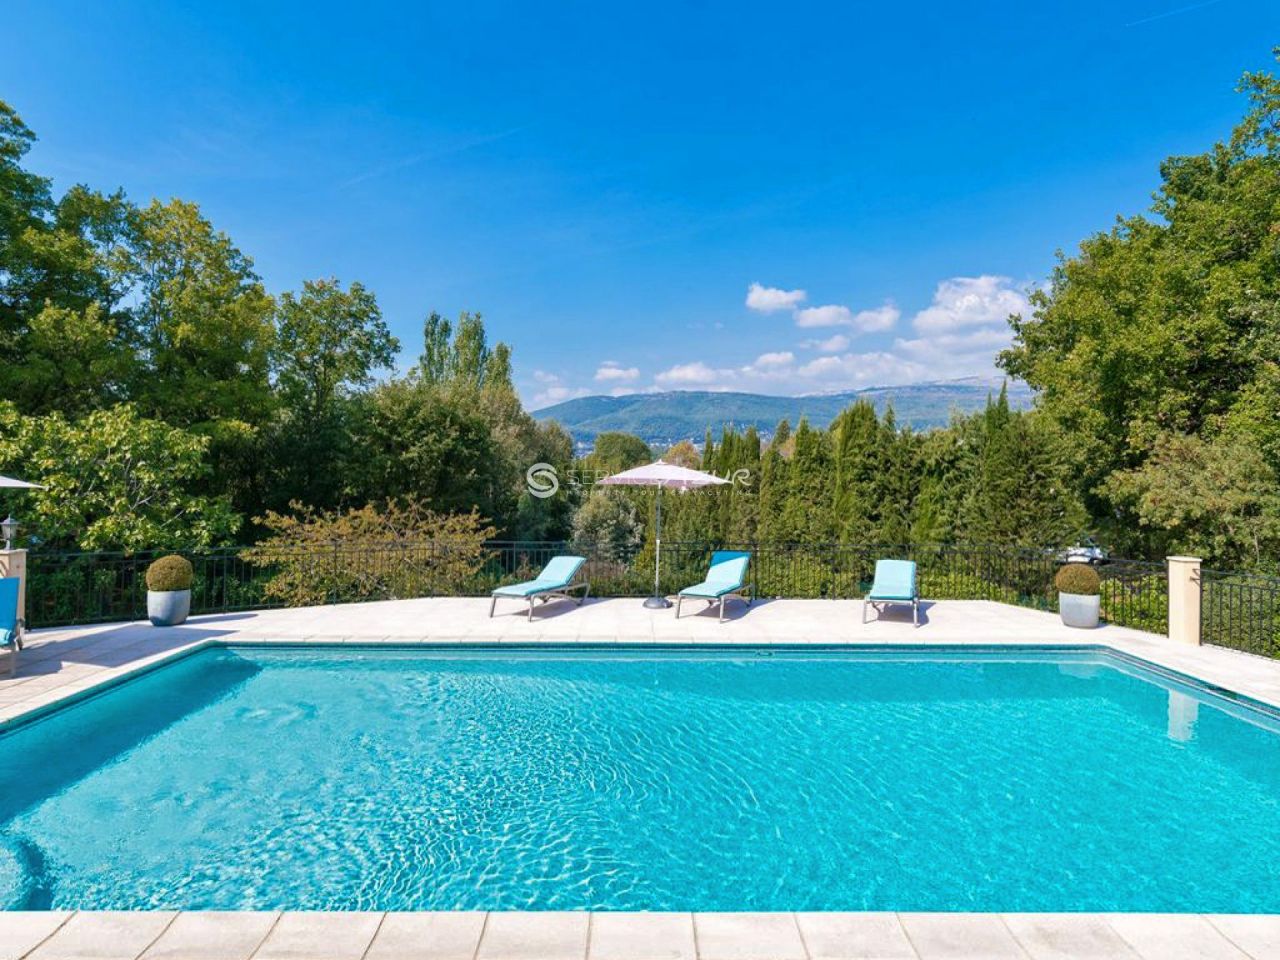 Villa in Grasse, Frankreich, 280 m2 - Foto 1